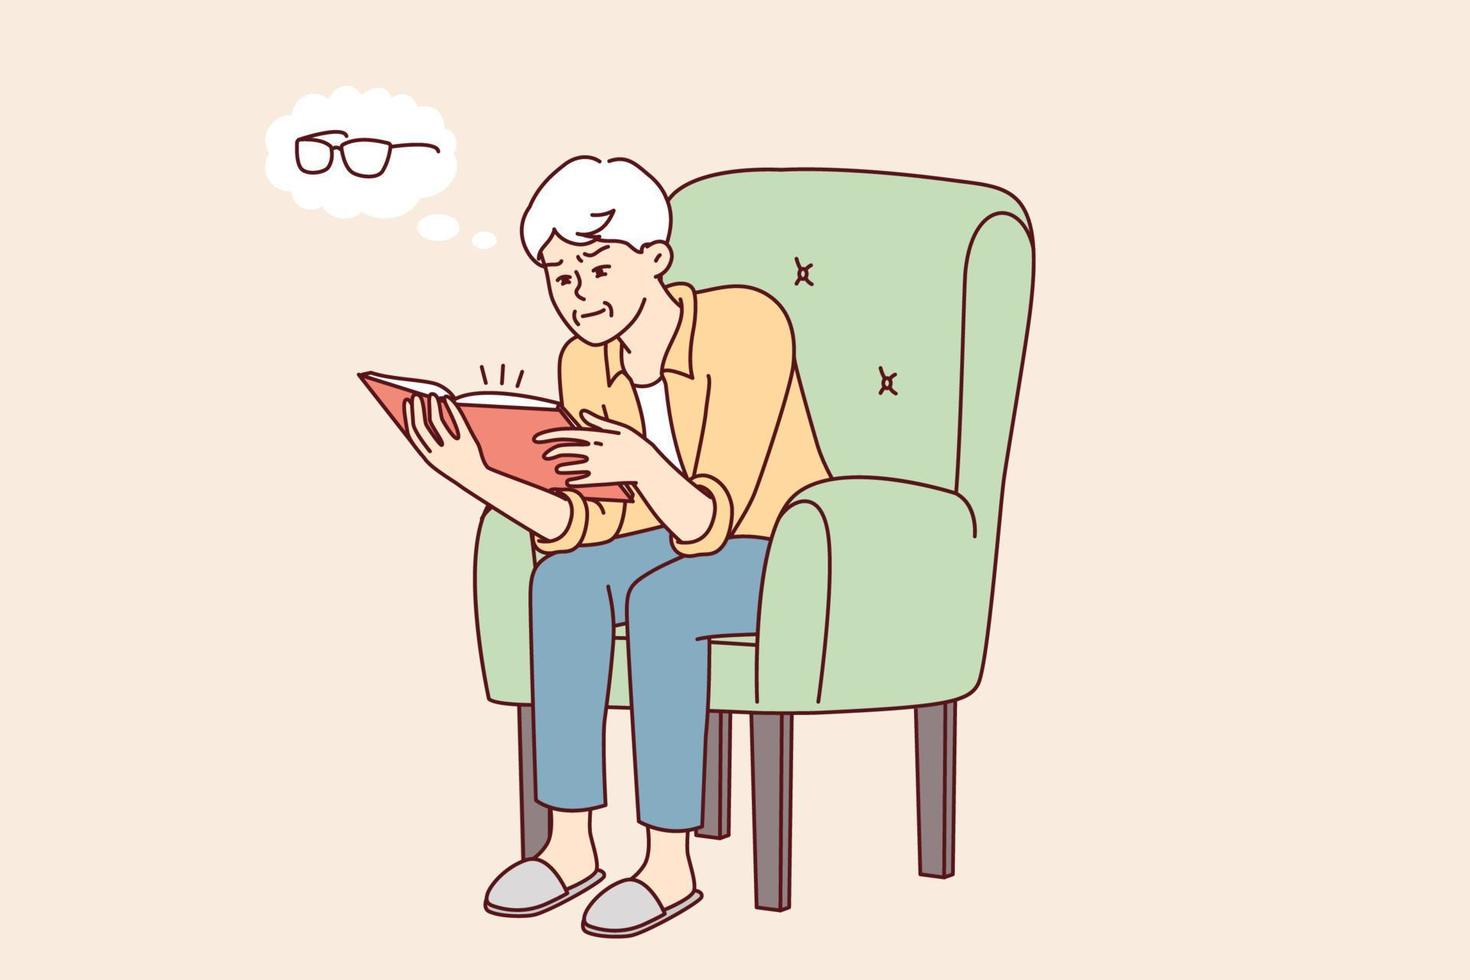 homem idoso lendo livro pensa na necessidade de comprar óculos para melhorar a visão. humano de cabelos grisalhos senta-se na cadeira percebendo que está começando a perder a visão enquanto estuda literatura. desenho vetorial plano vetor